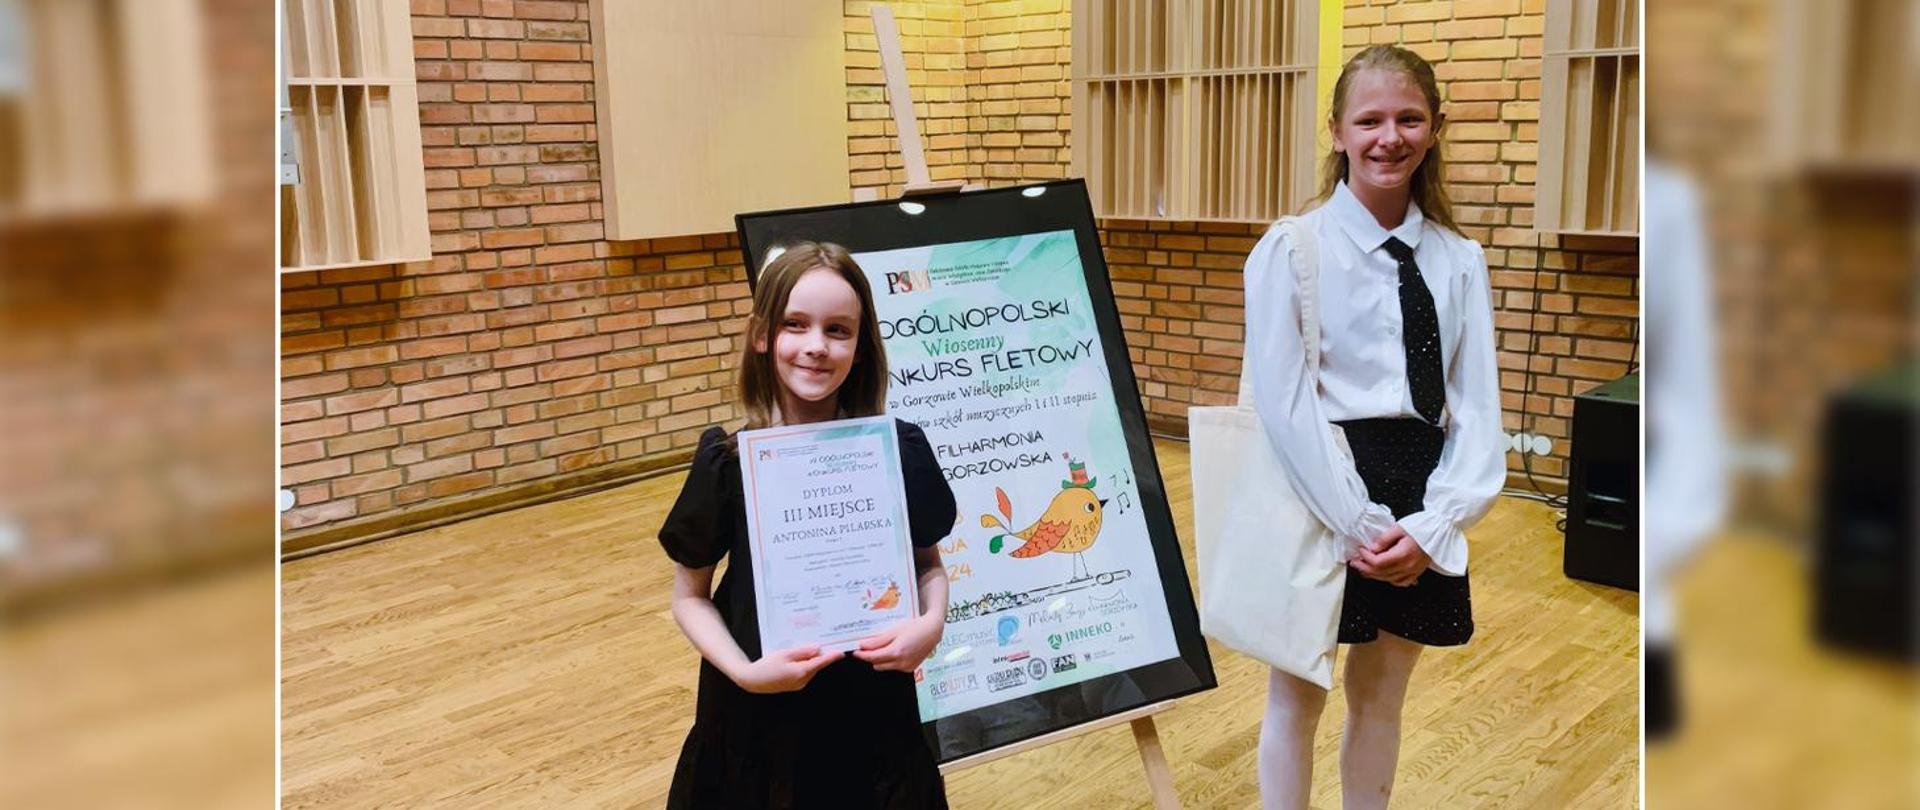 Dwie dziewczynki stoją przy banerze reklamującym ogólnopolski konkurs fletowy, jedna z nich trzyma w ręku dyplom.